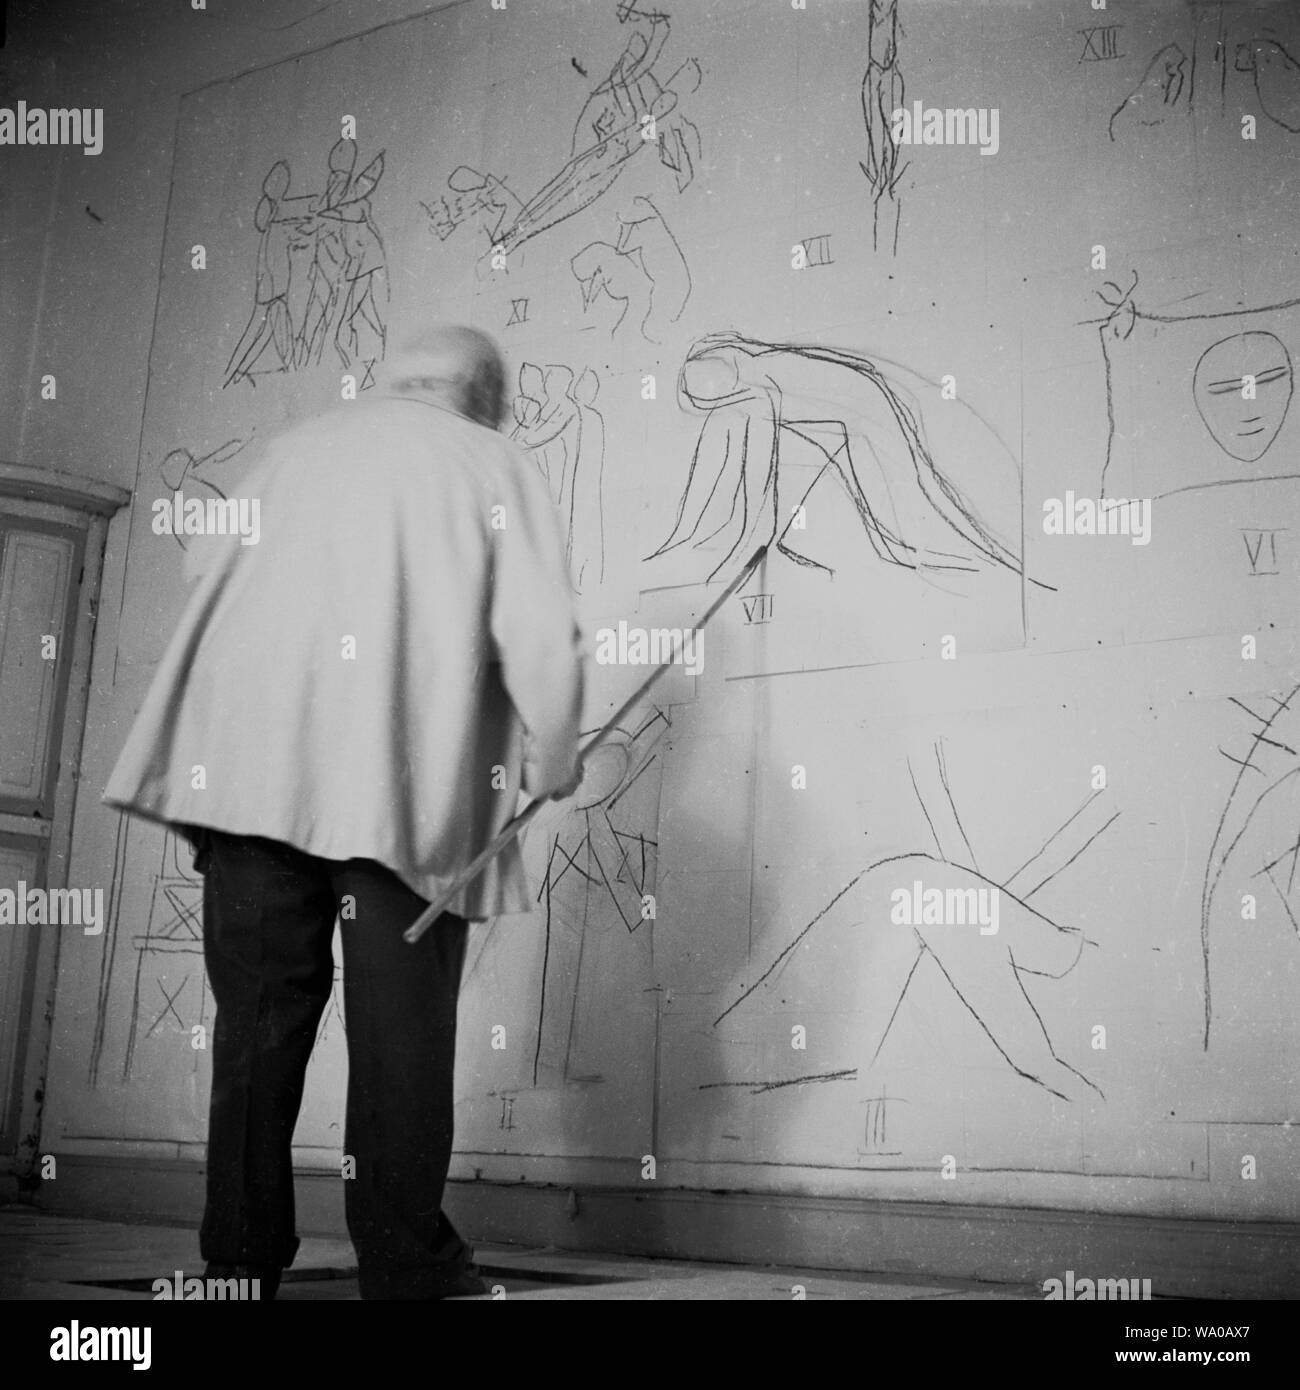 1951, historische, französischen Künstlers Henri Matisse Arbeiten in seinem Atelier auf seine Entwürfe für die Chapelle du Rosaire de Vence (der Rosenkranz Kapelle) eine kleine katholische Kapelle Ferienwohnung. Ein älterer Mann zu dieser Zeit, Matisse verwendet einen langen Stock die Bilder für das Innere der Kapelle auf dem Papier an die Wand zu zeichnen. Stockfoto